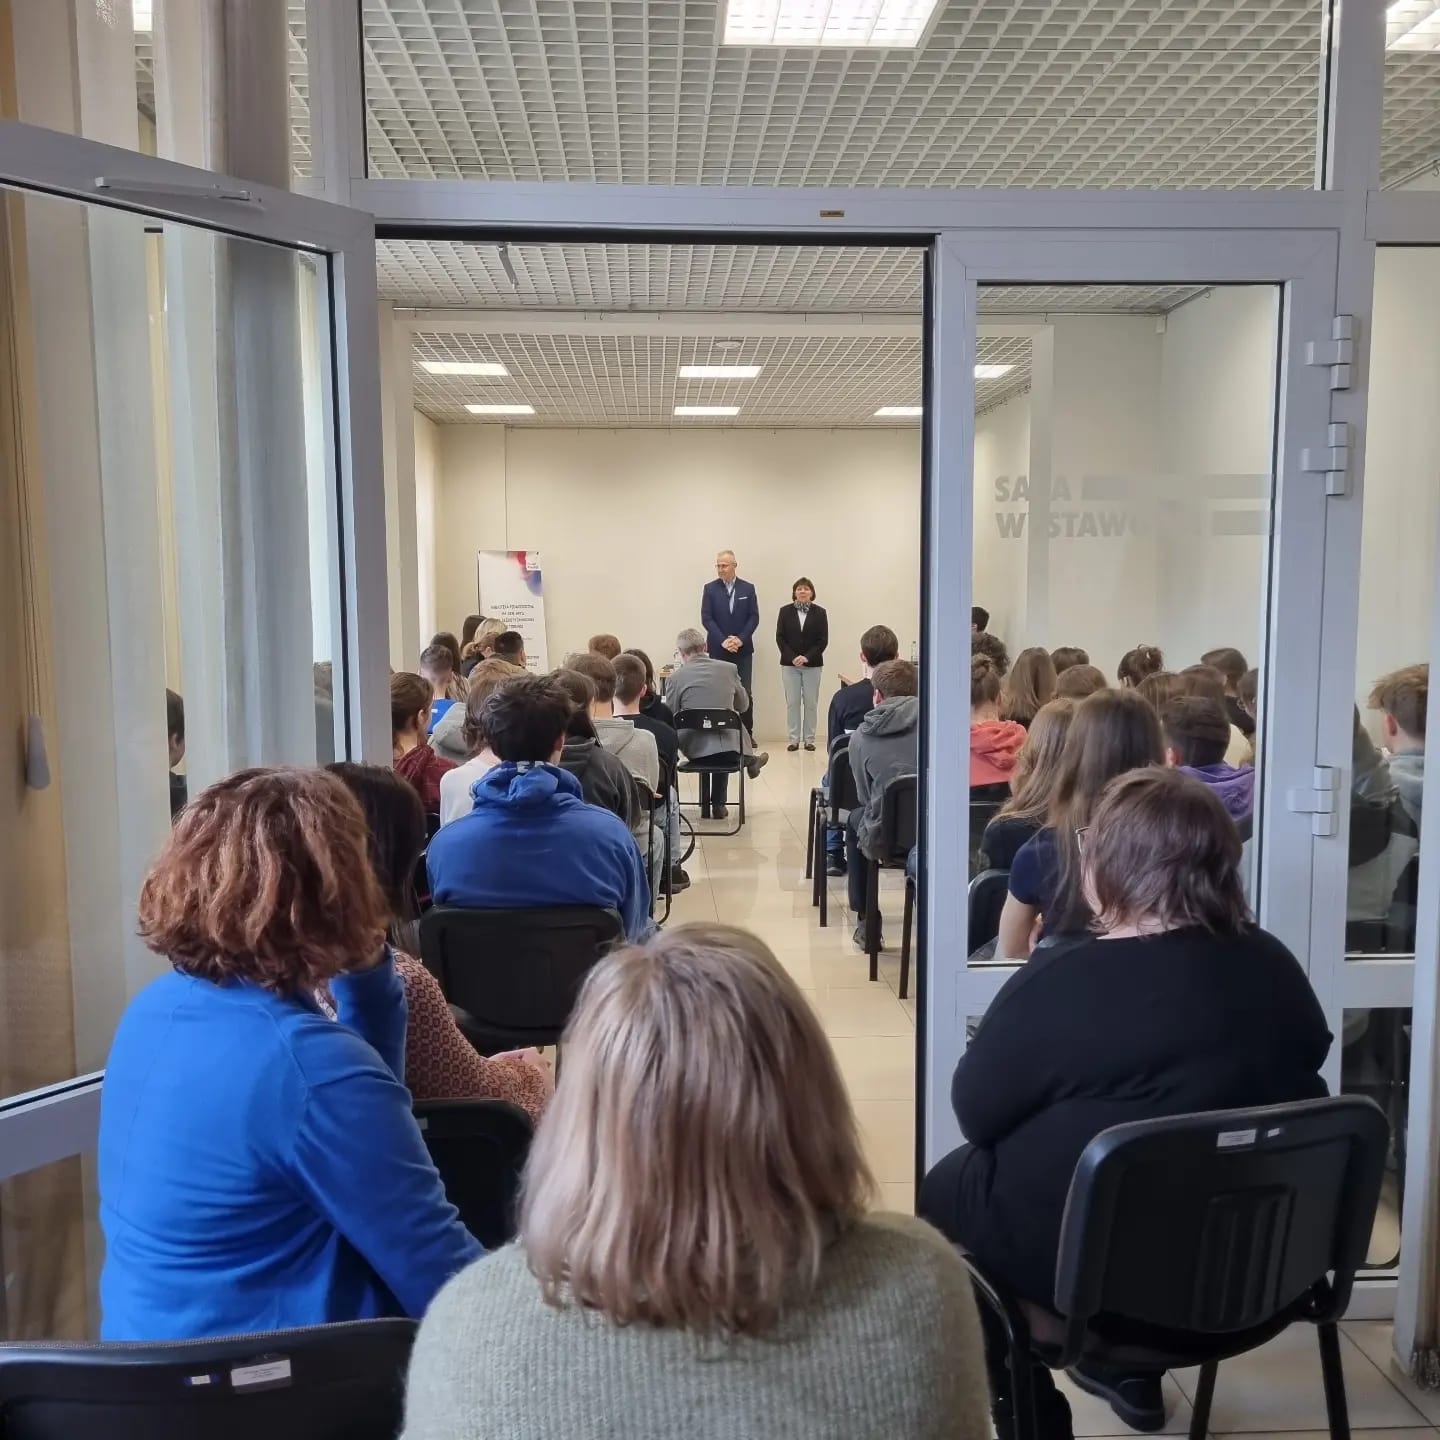 Zdjęcia przedstawiają salę wystawową Biblioteki Pedagogicznej w Toruniu. W sali znajdują się: publiczność, jurorzy, uczestnicy debaty, prowadzący debatę.